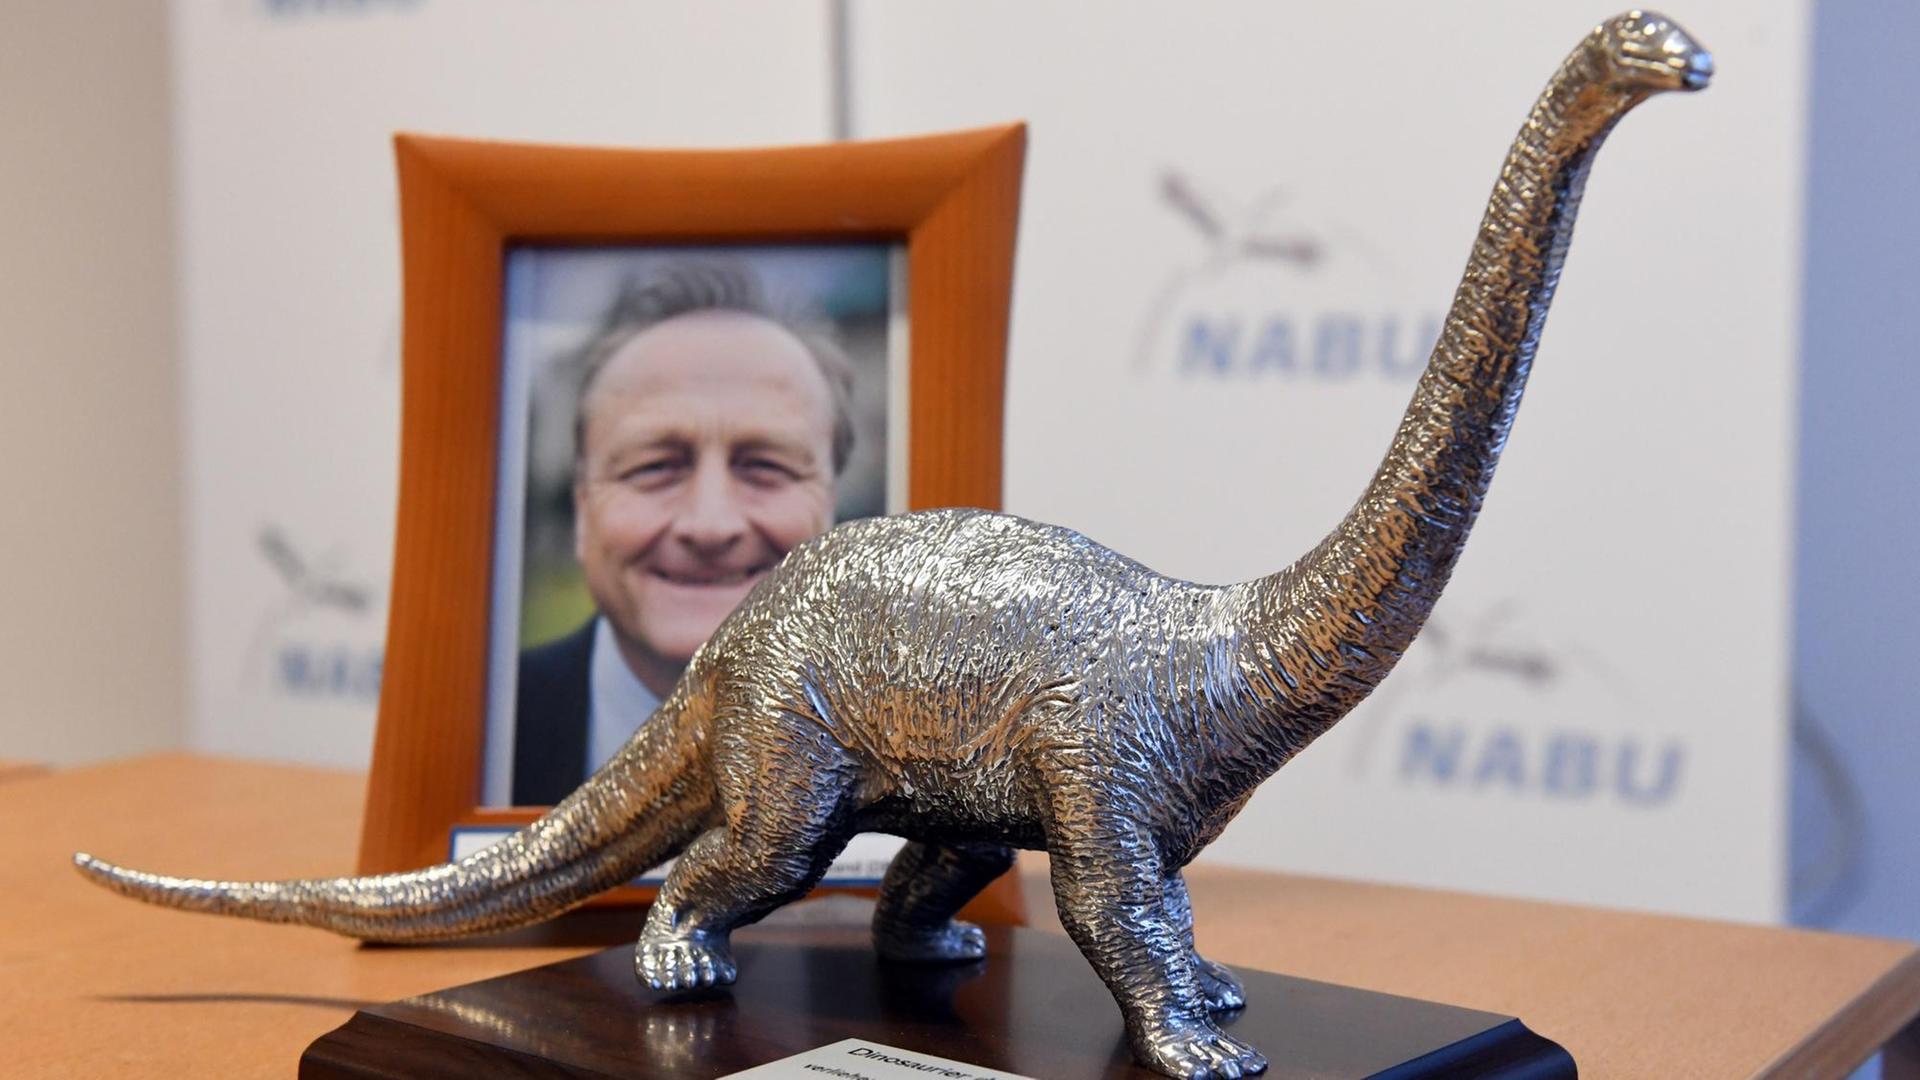 Die silbern glänzende Dinosaurier-Figur steht auf einem Tisch vor einem Foto von Bauernpräsident Rukwied